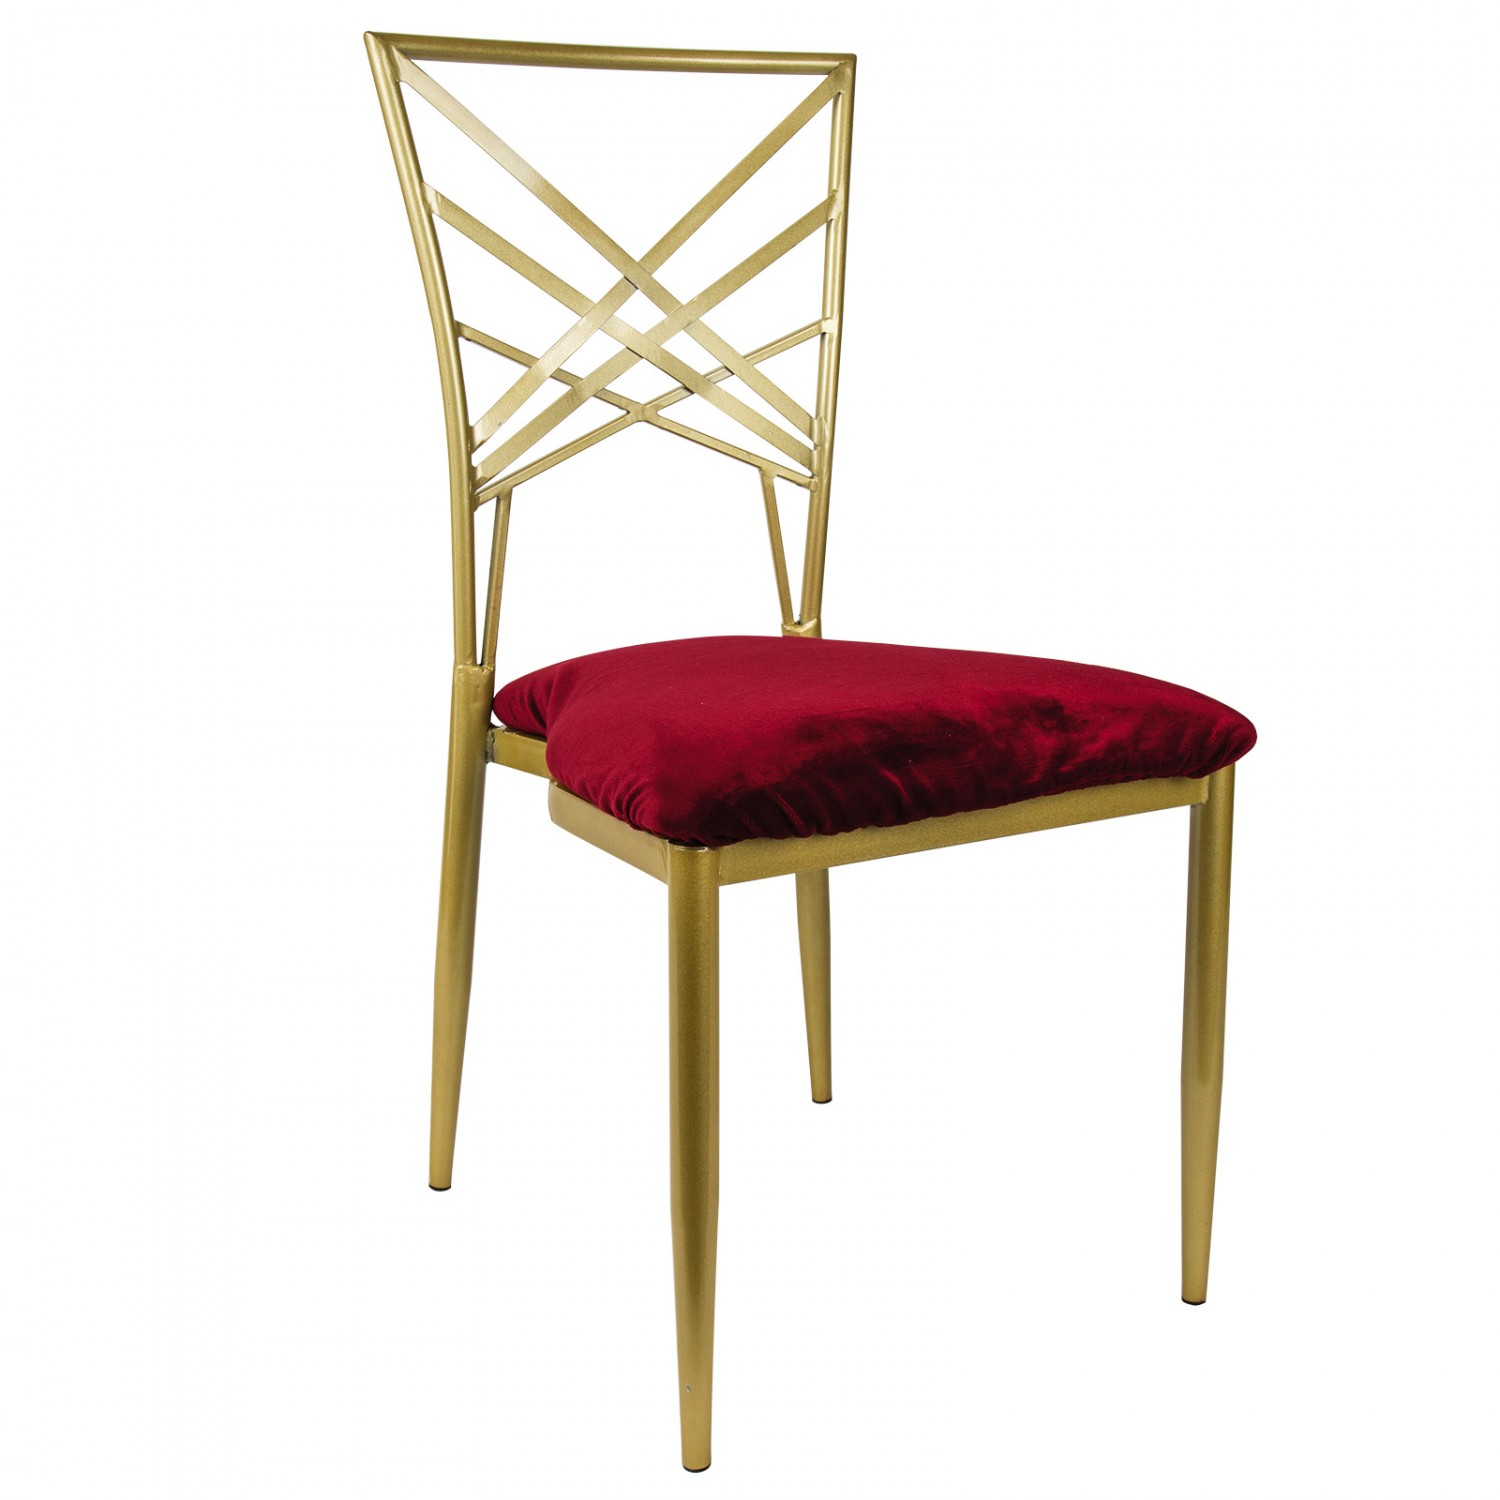 Sedie Impression oro con seduta in velluto di colore rosso cardinale